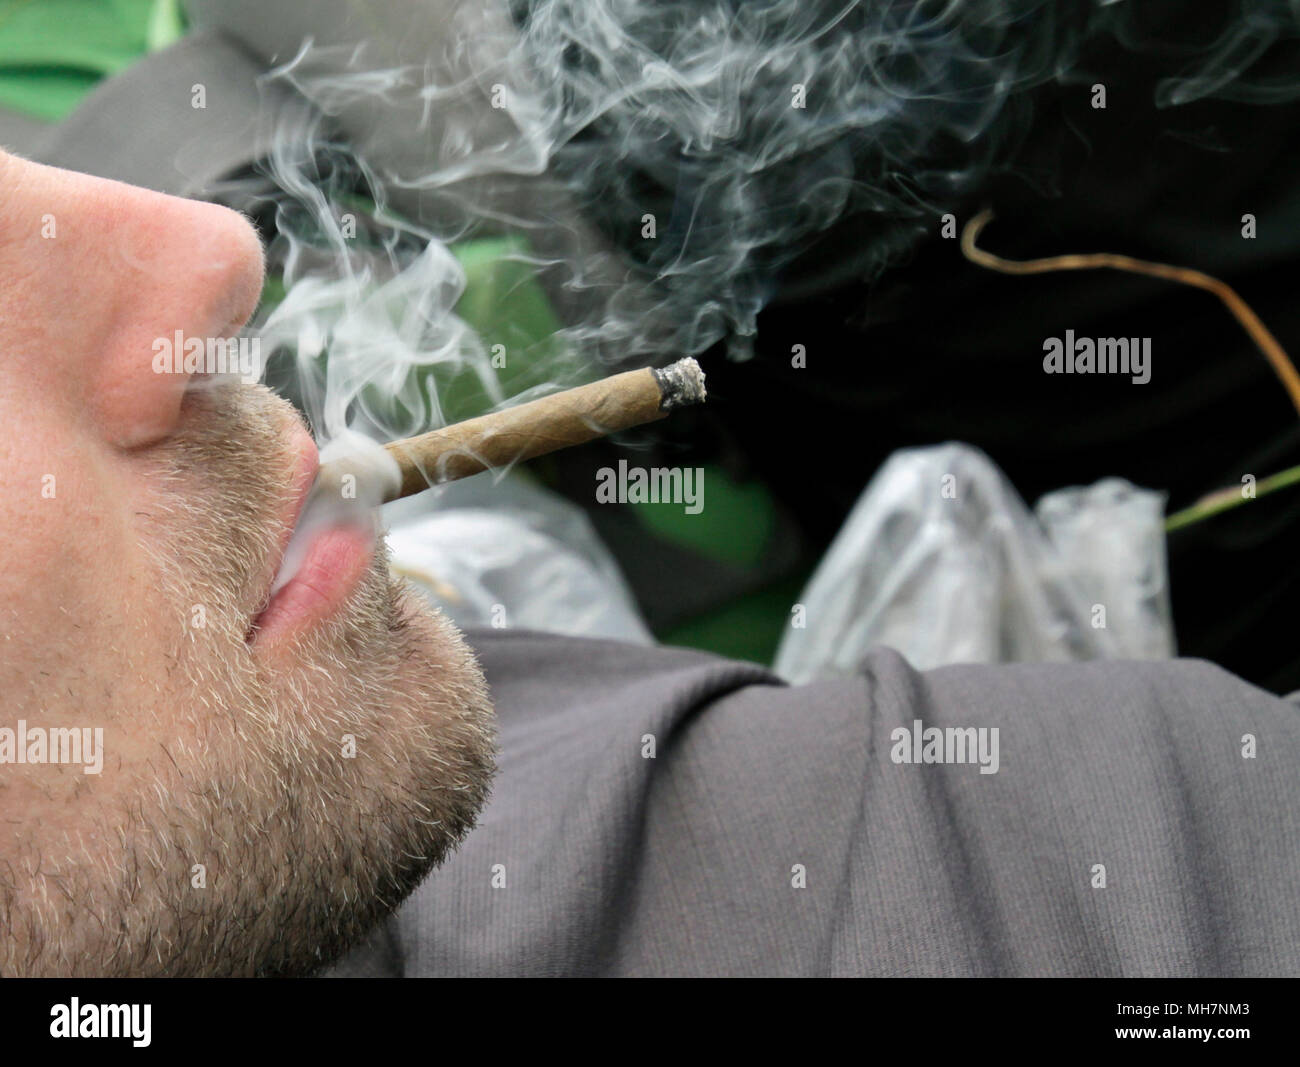 ACCESSOIRES FUMEURS - Accessoires Cigarettes - Fume-cigarette